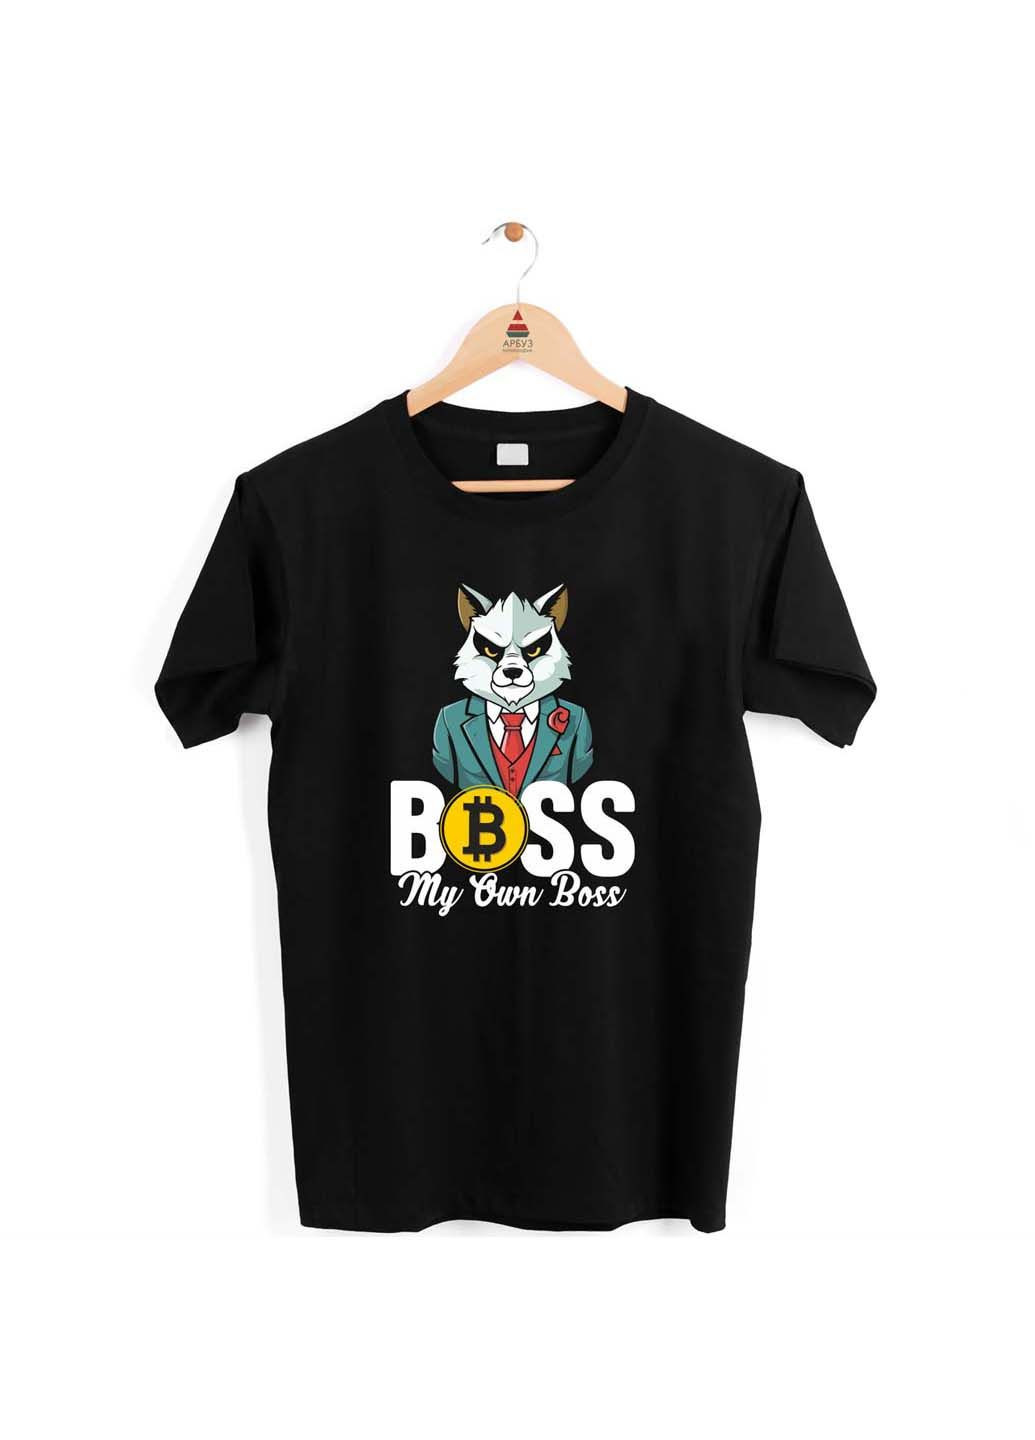 Чорна футболка boss my own boss. мій власний бос Кавун